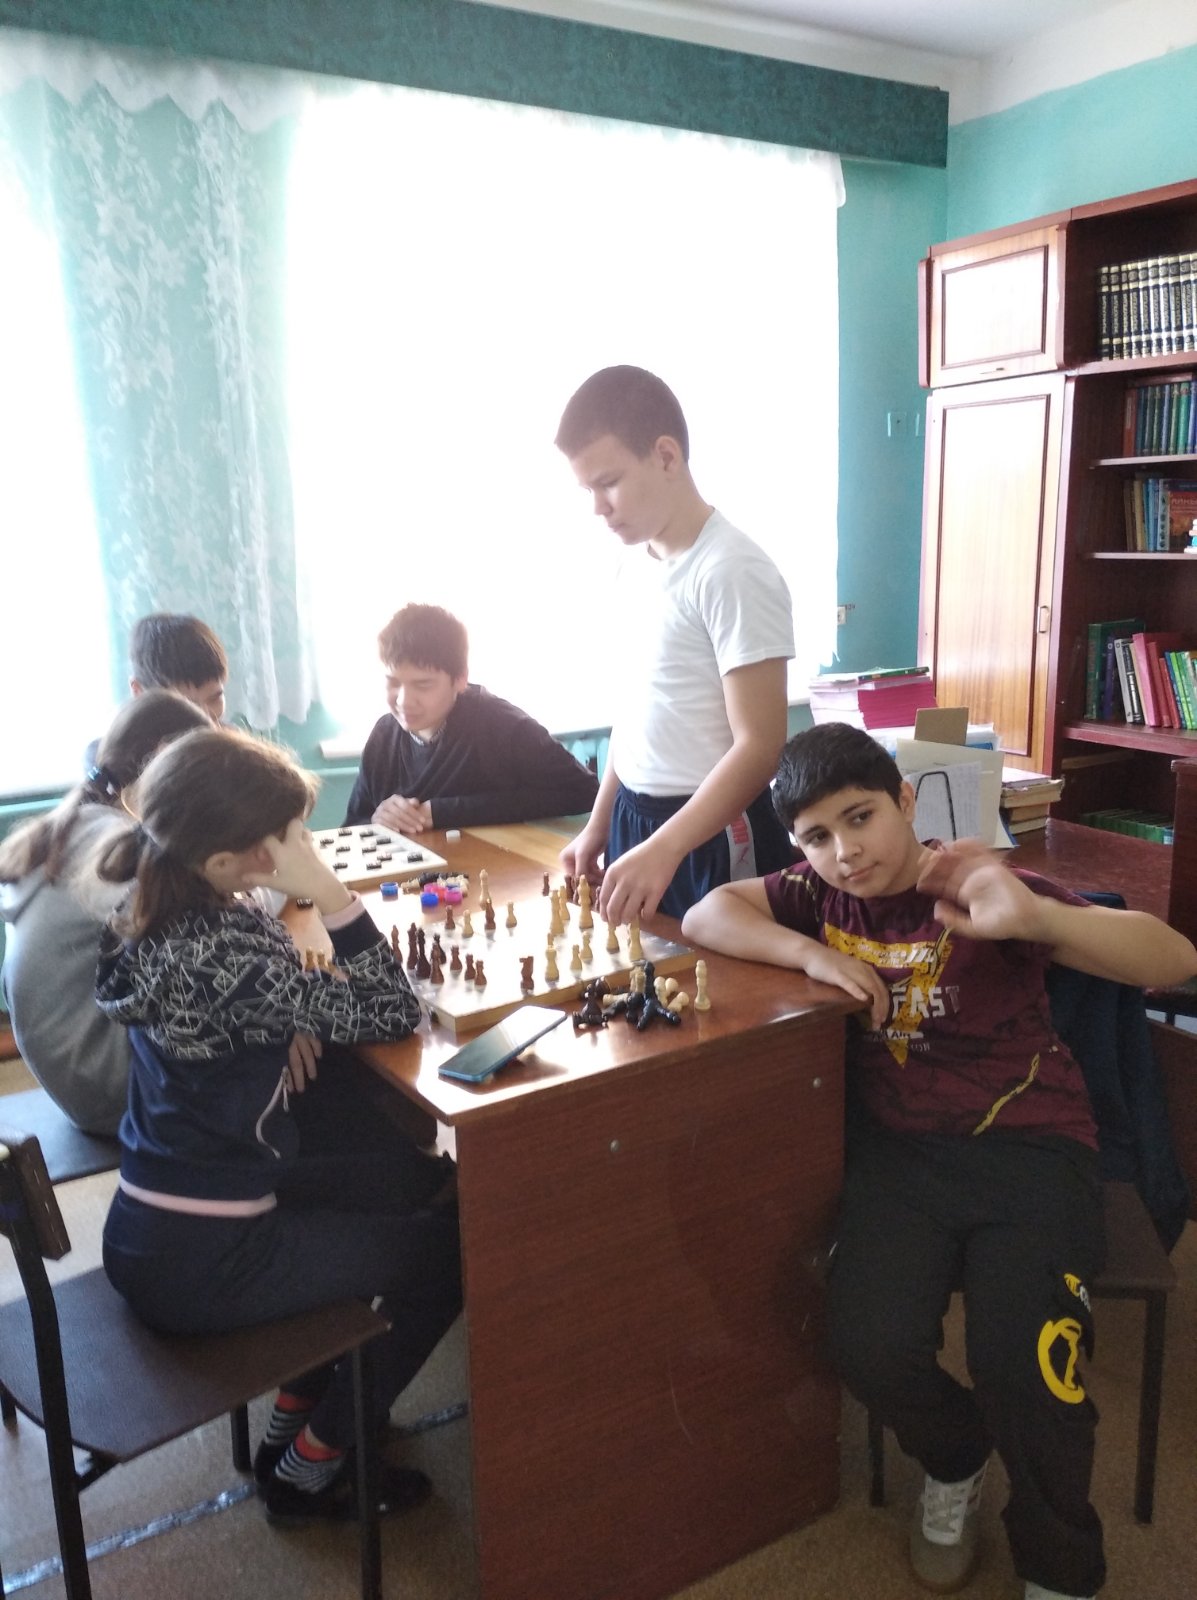 1 ноября 2022г в школе прошли соревнования по шахматам, посвящённые 120-летию образования школы, под руководством руководителя кружка «Шахматы» Паниной Н.В.